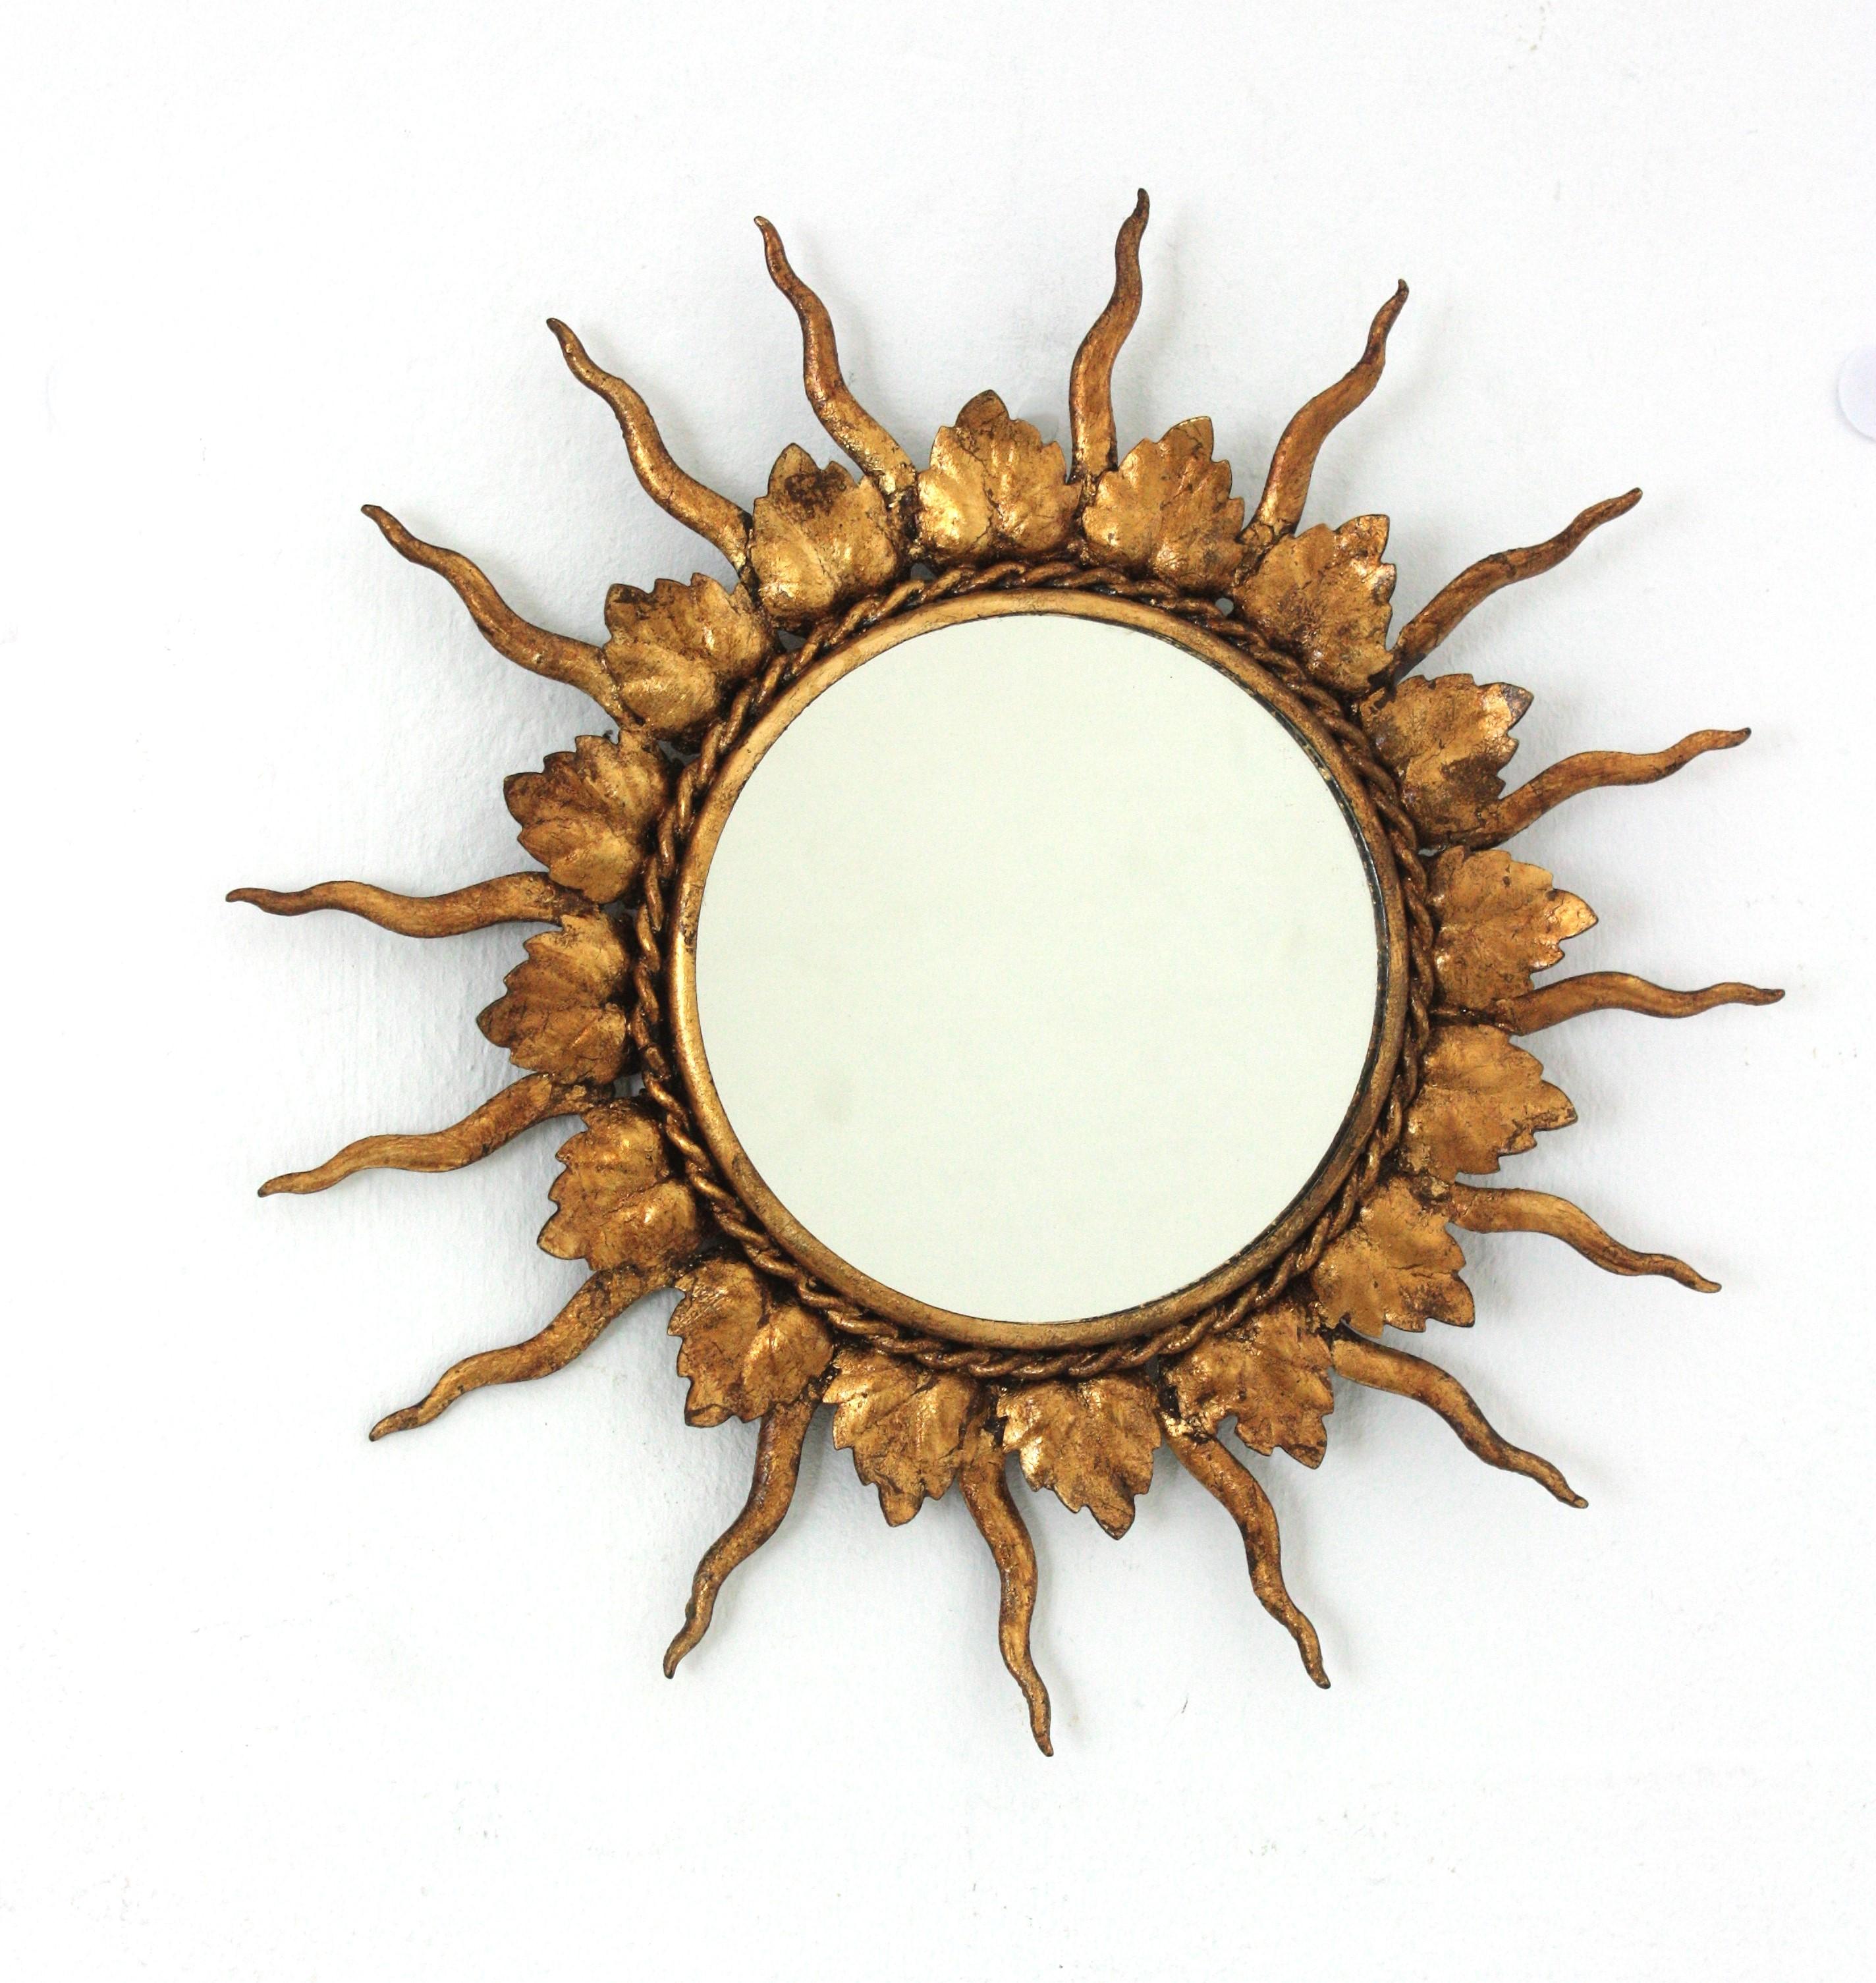 Miroir miniature en fer doré. France, années 1950
Joli miroir miniature en fer doré fait à la main. Le cadre est composé d'une alternance de feuilles et de rayons en fer finis avec une dorure à la feuille d'or.
Pièce inhabituelle en raison de sa